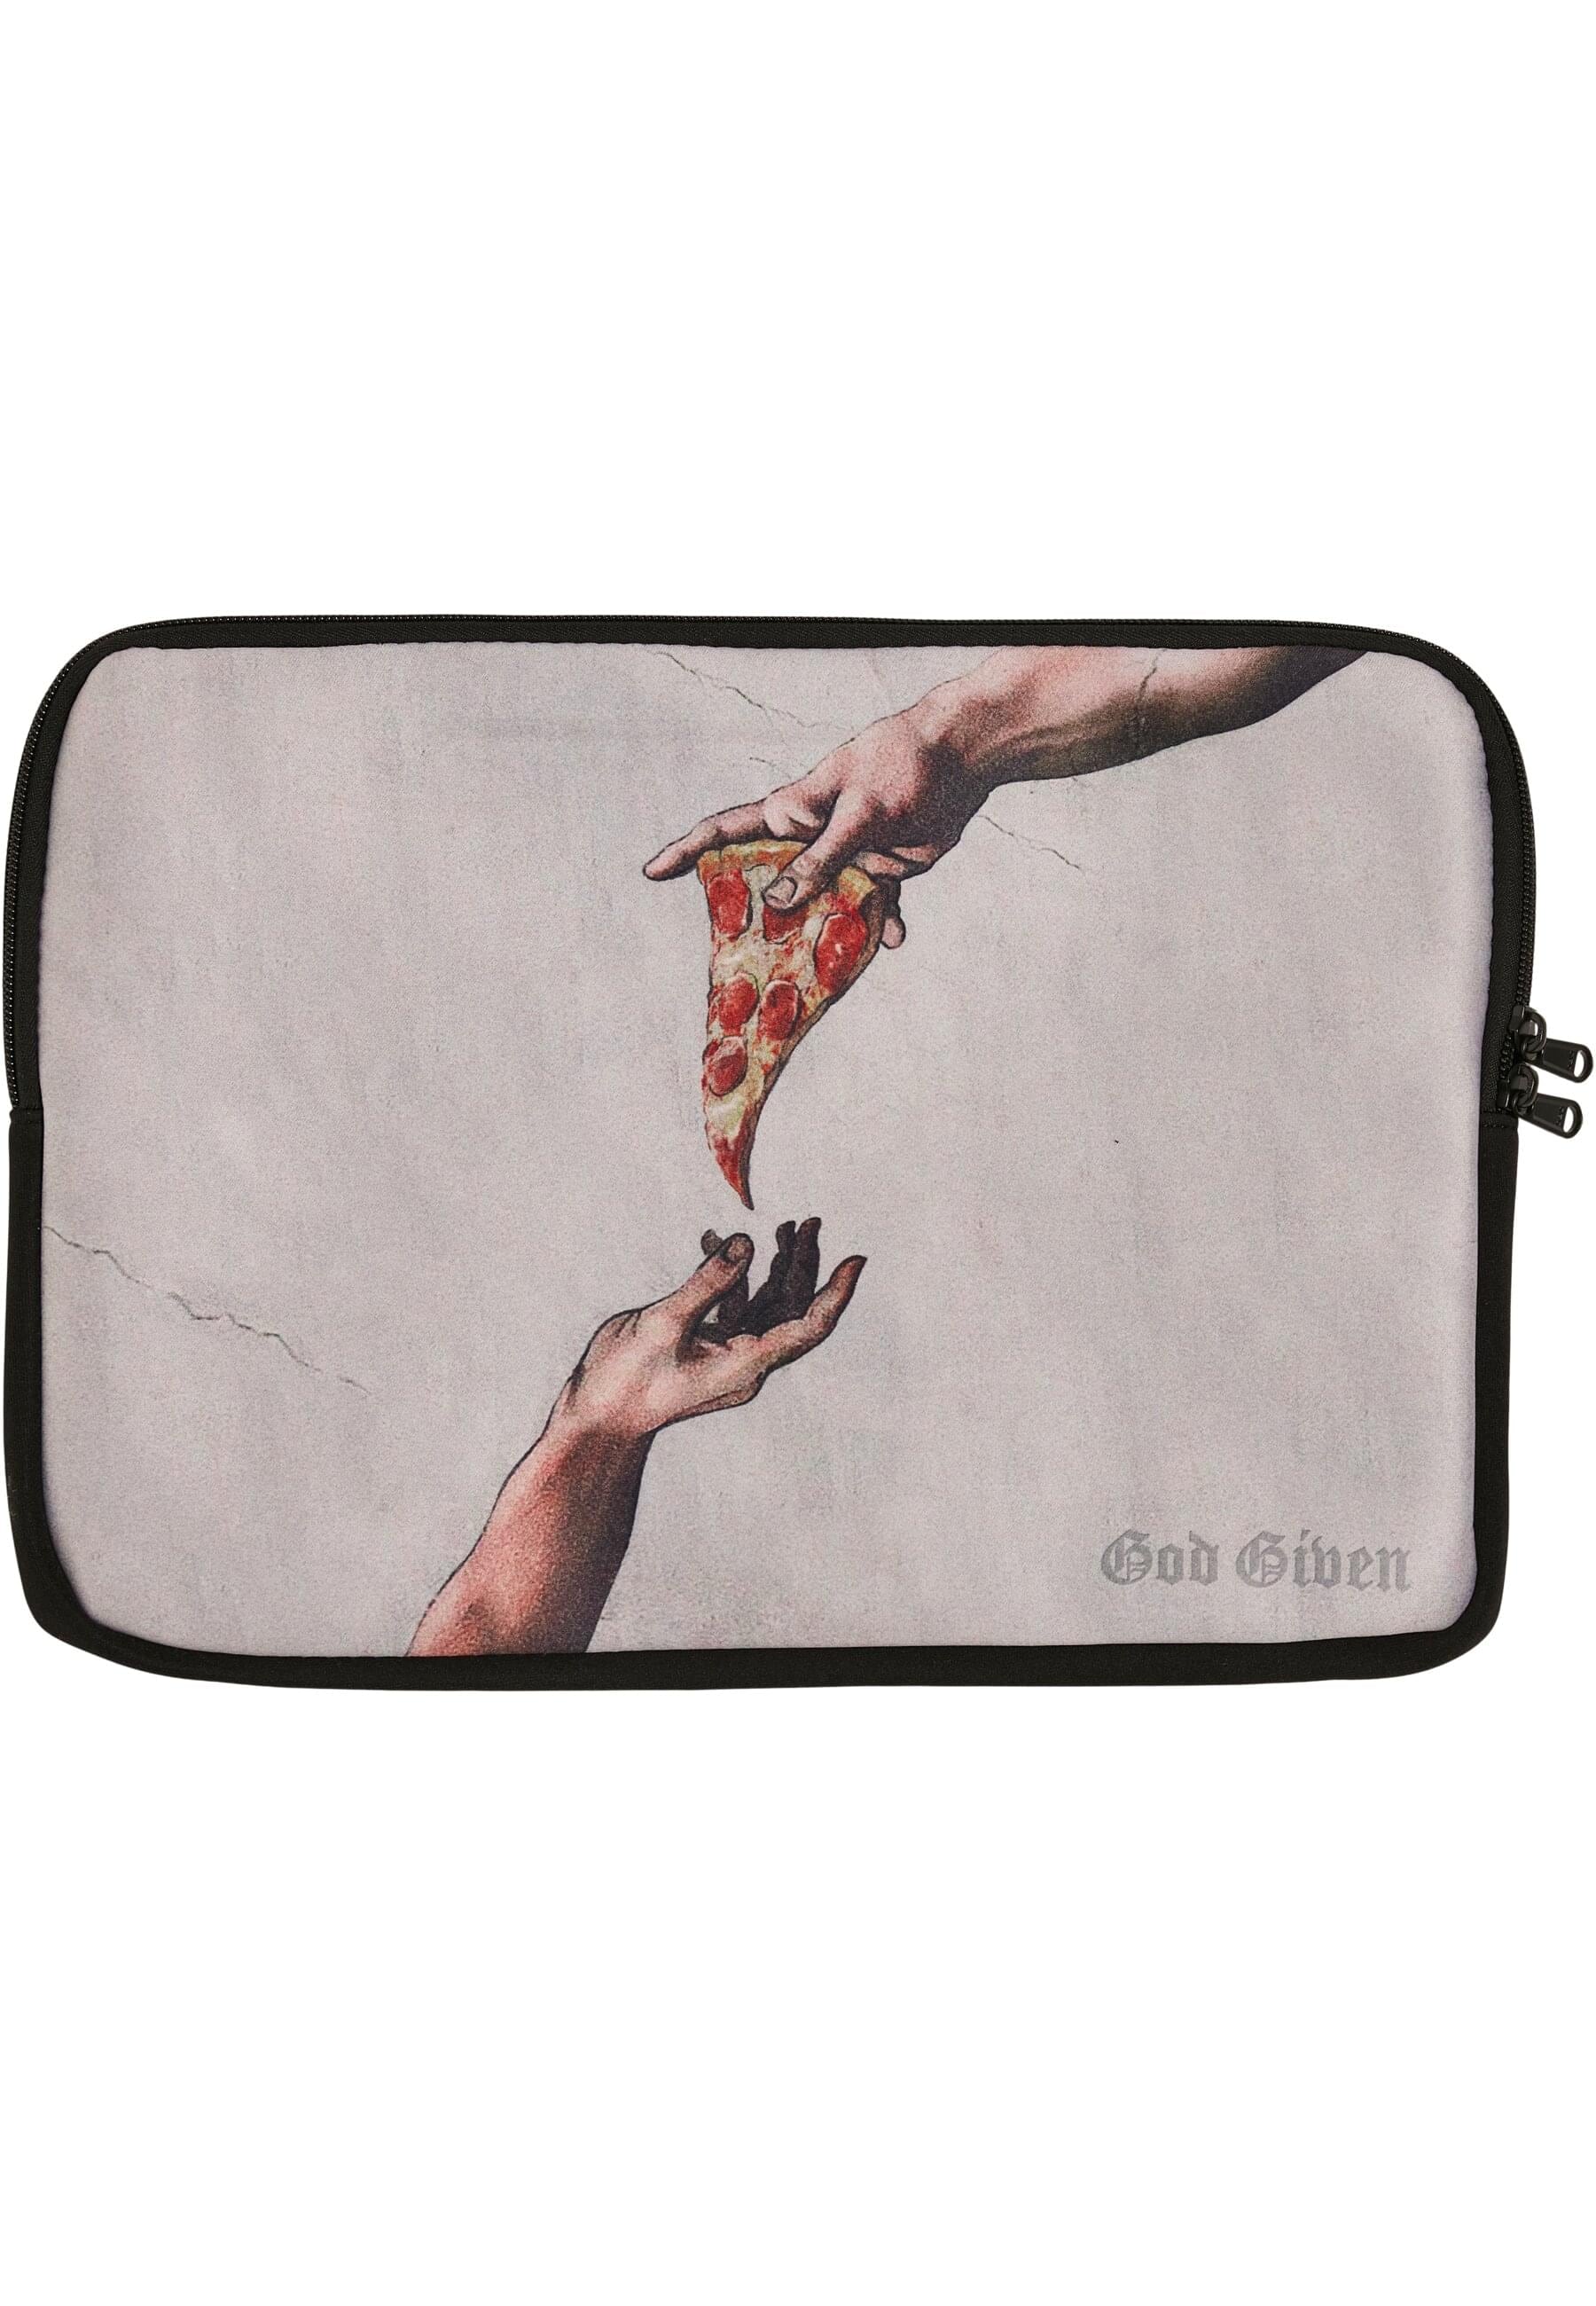 MisterTee Schmuckset »Accessoires Pizza Laptop Cover«, (1 tlg.)